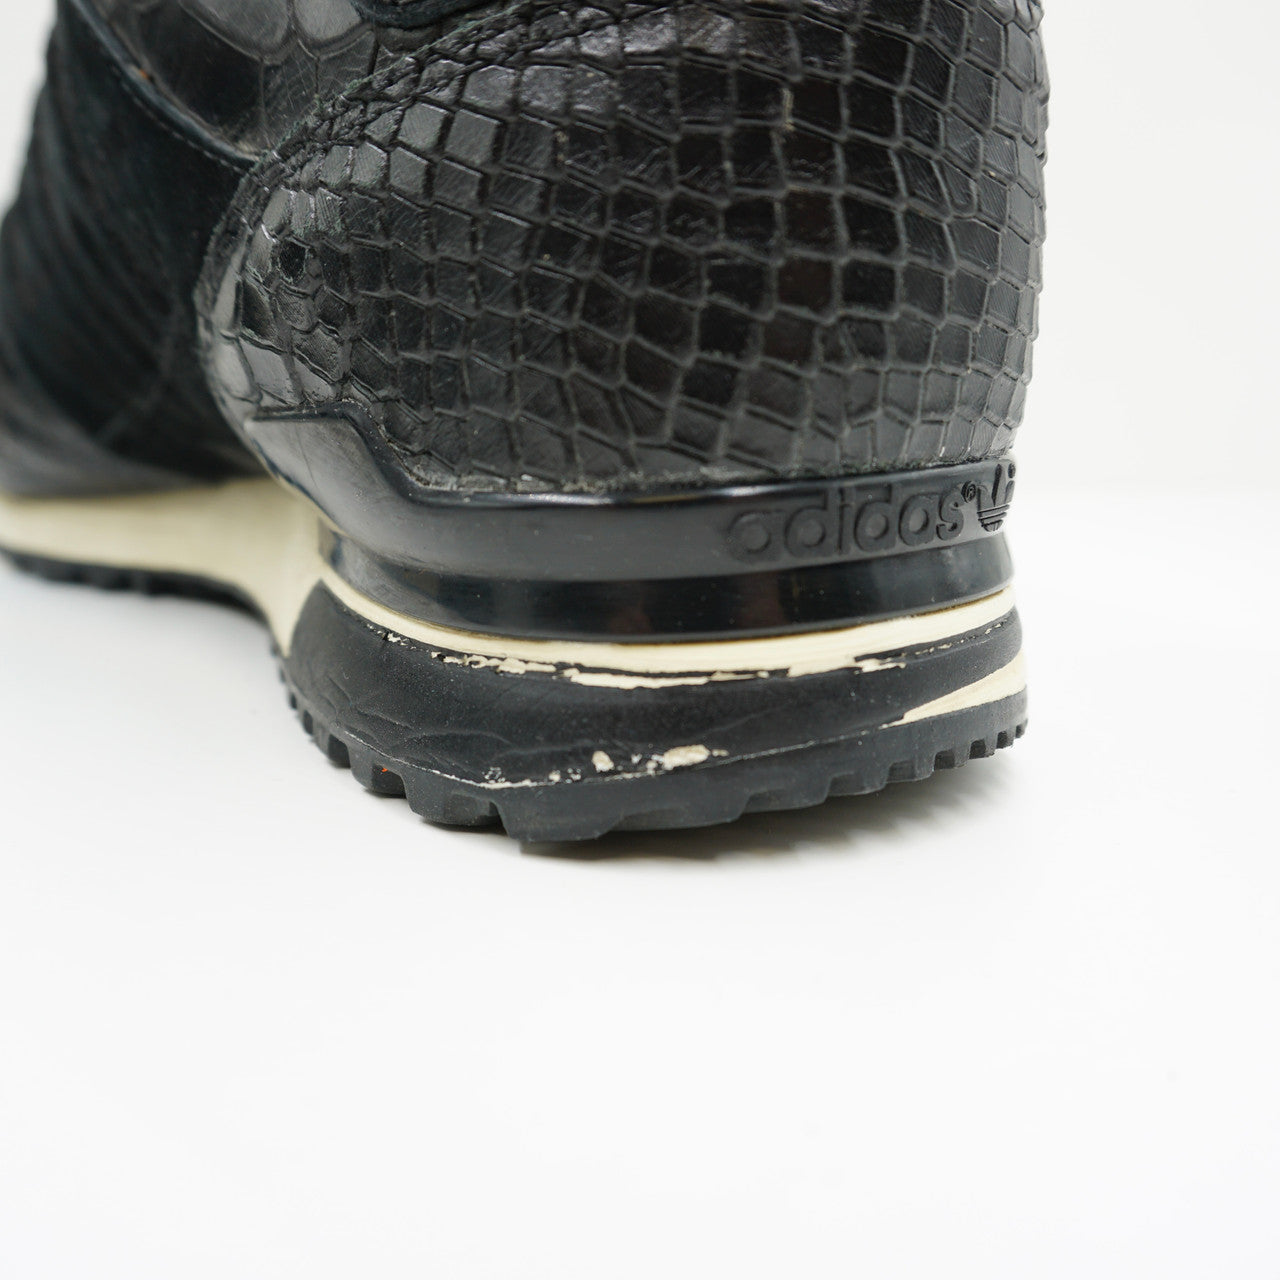 Adidas Consortium x Sneakersnstuff ZX 700 (W)